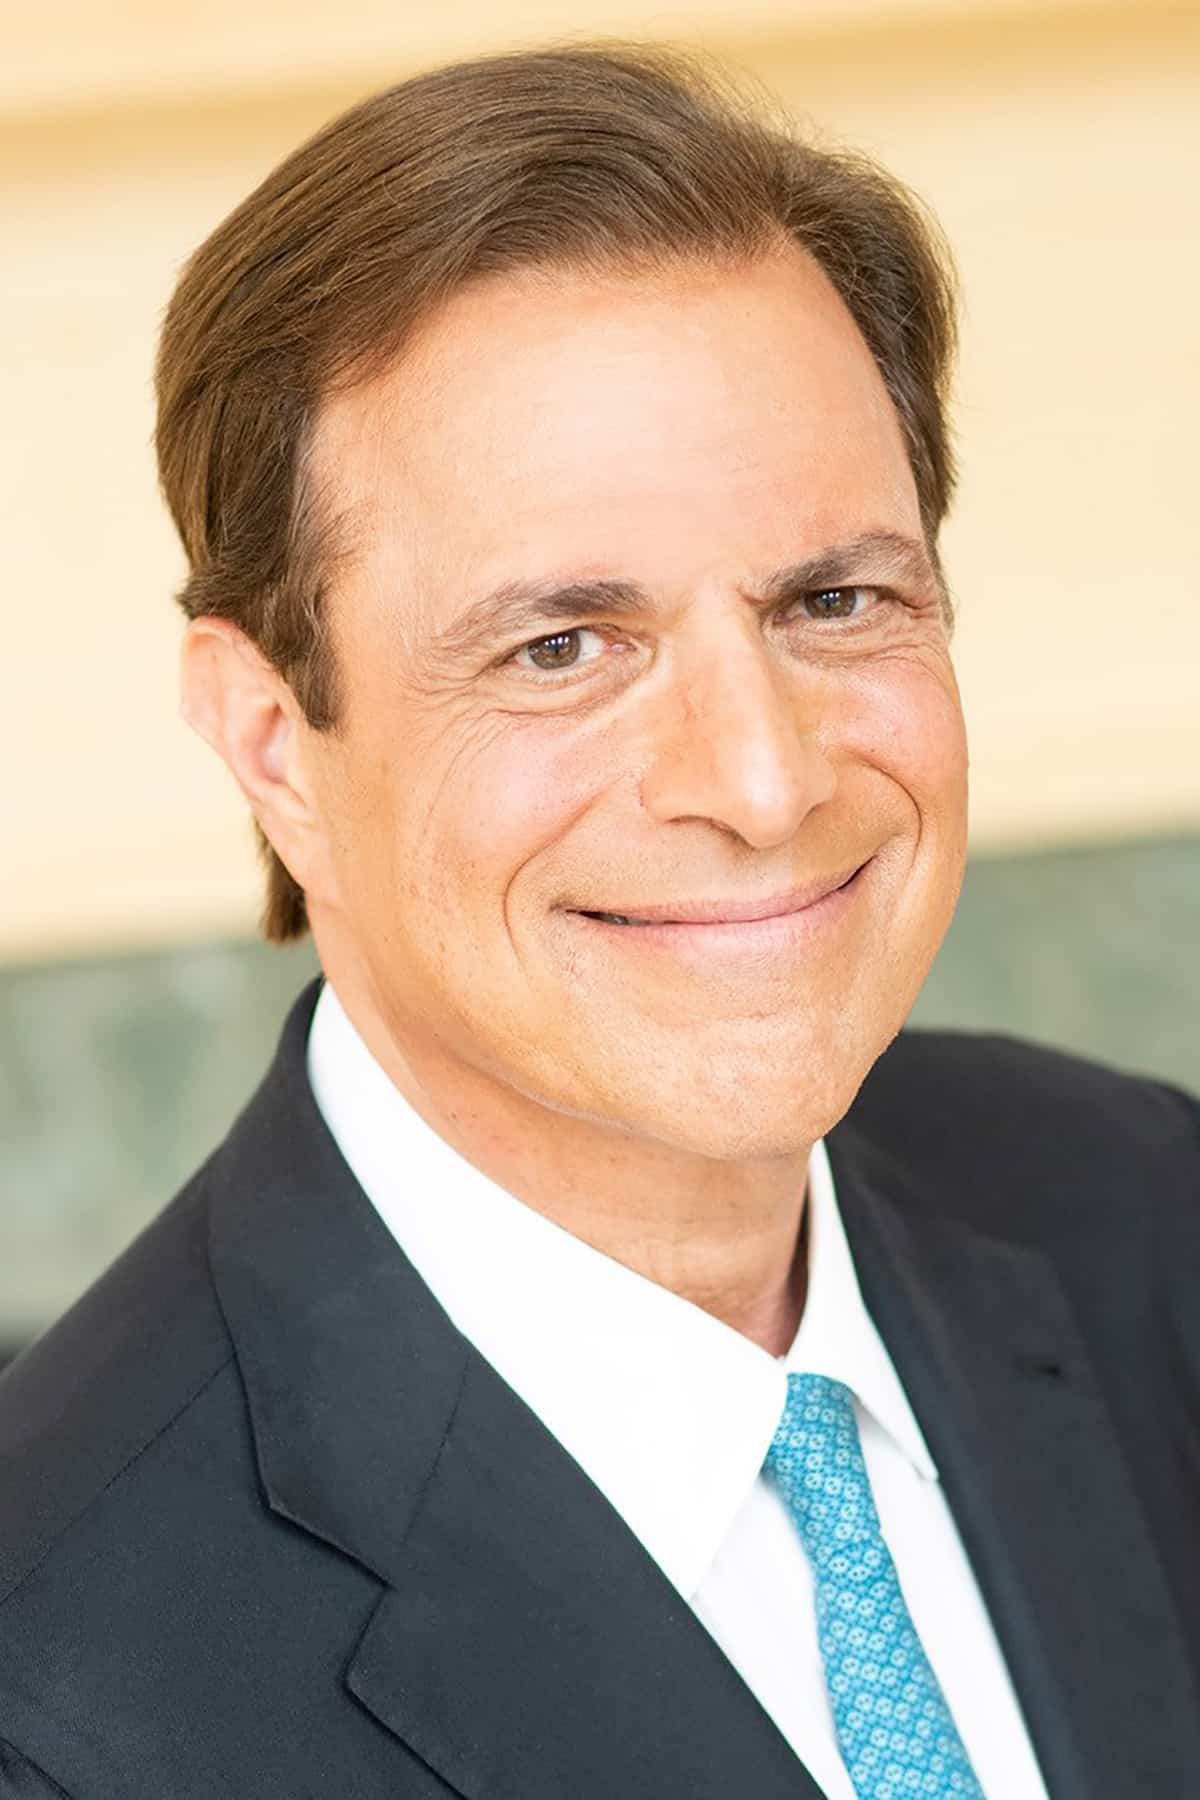 Headshot of Michael Beschloss